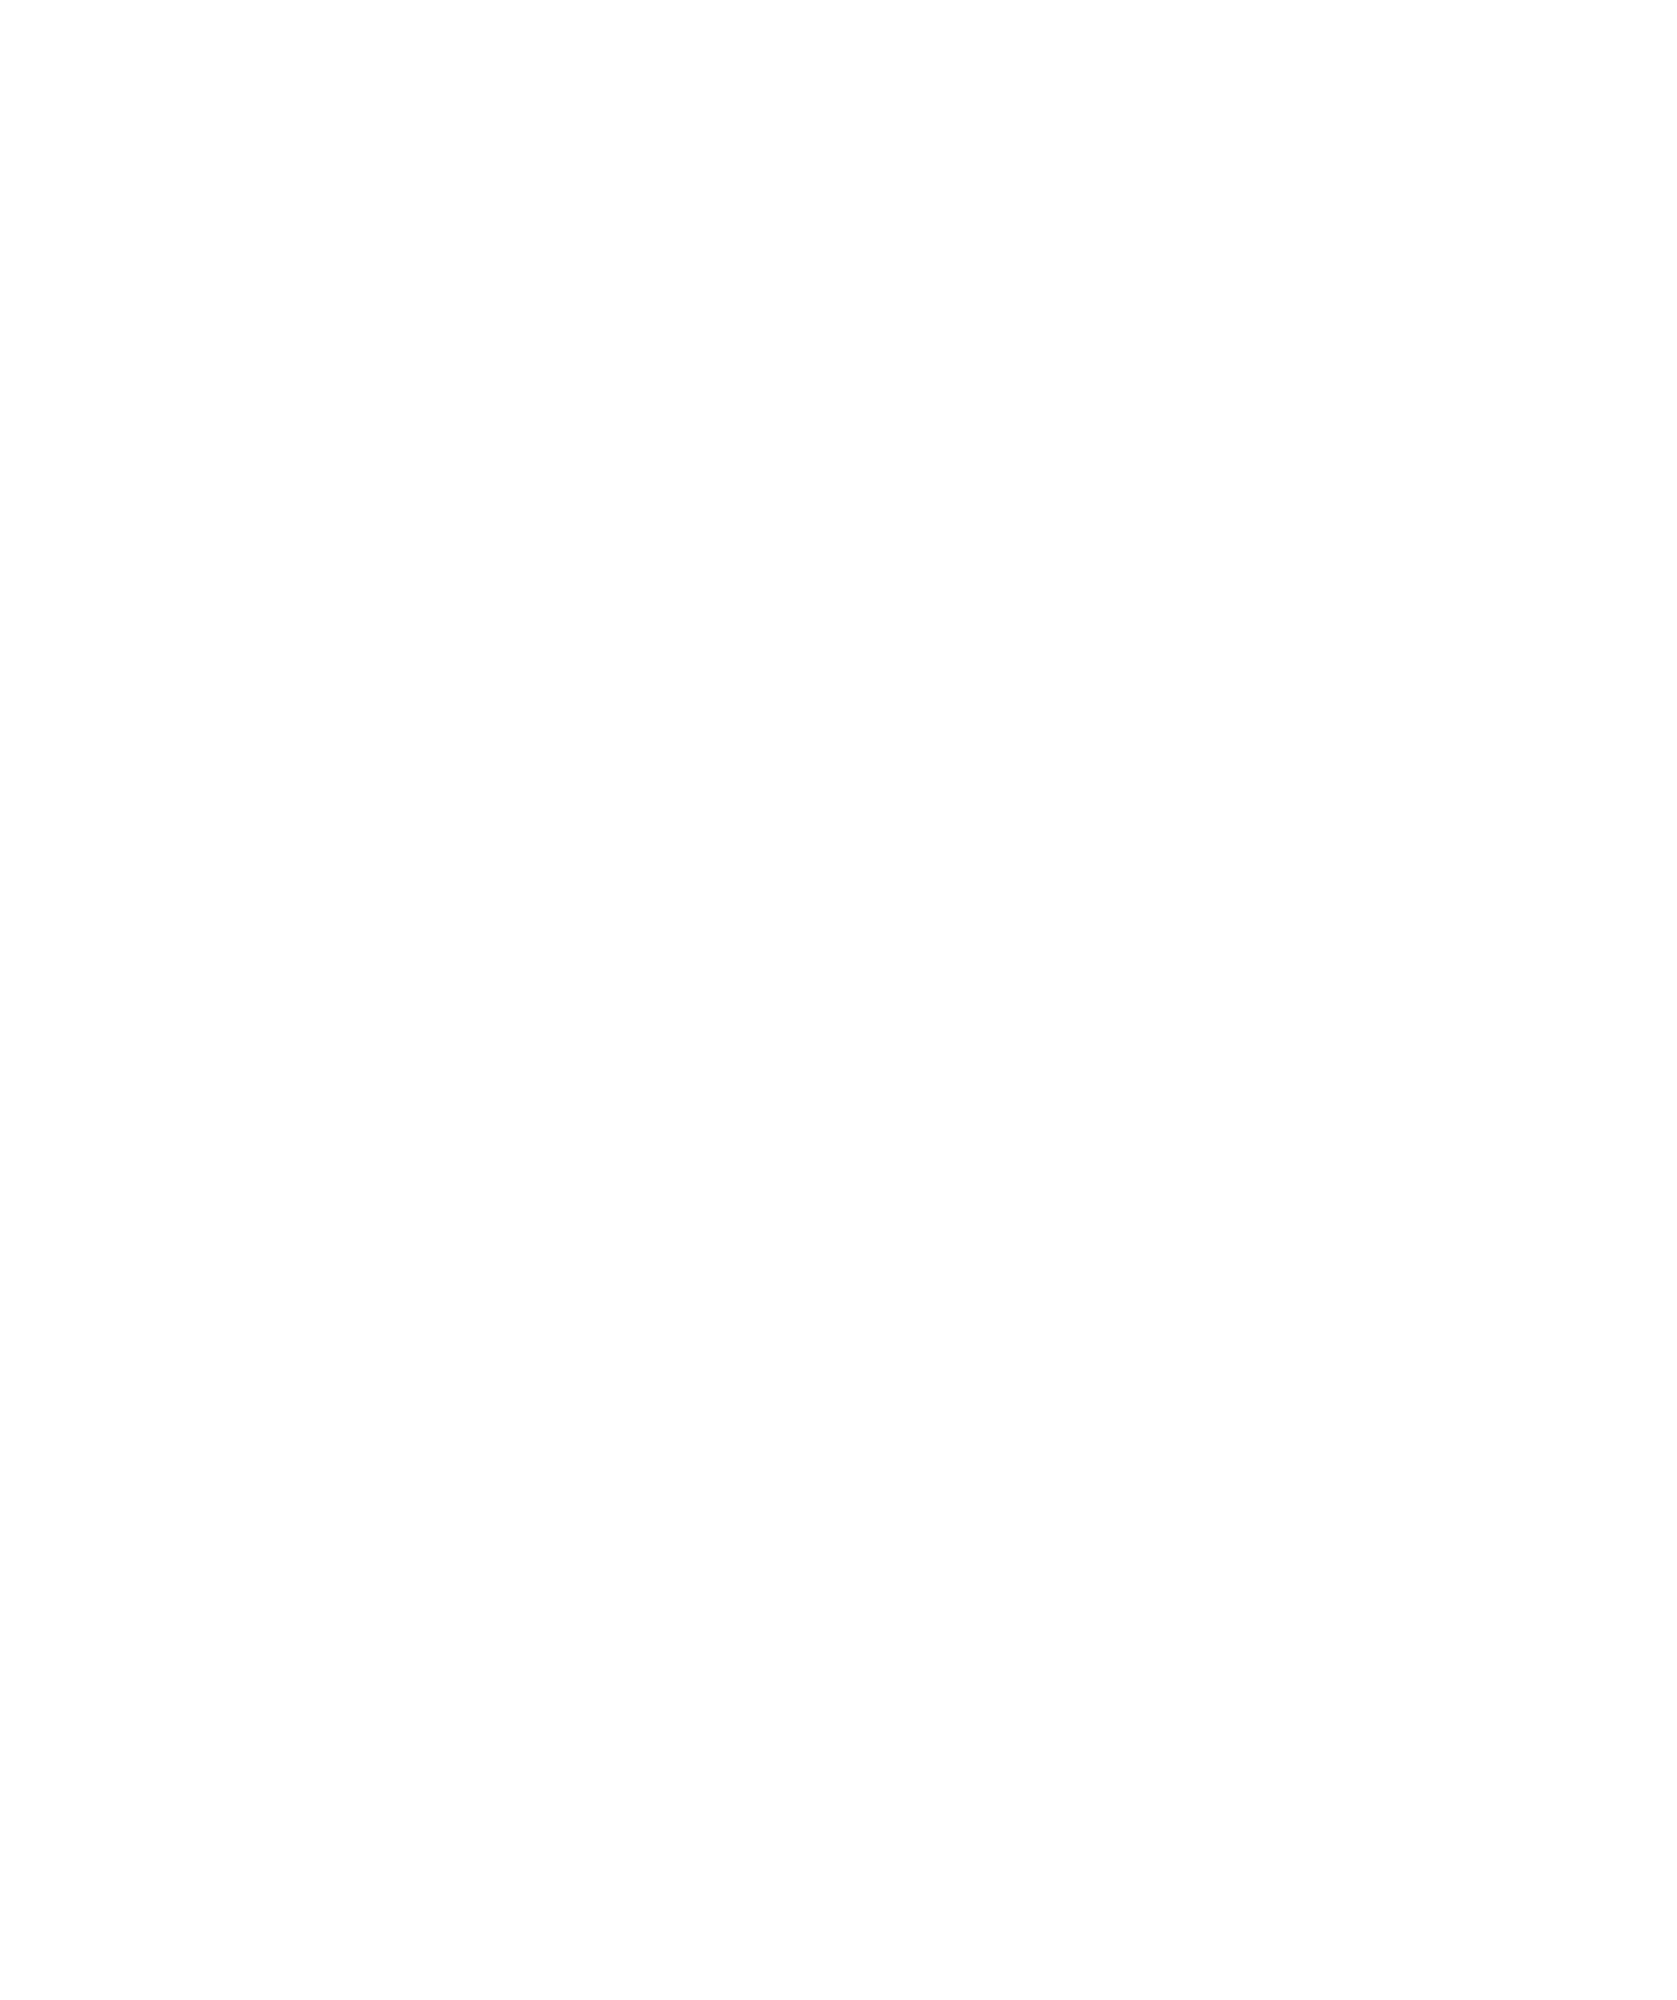 TINY MARIAGE